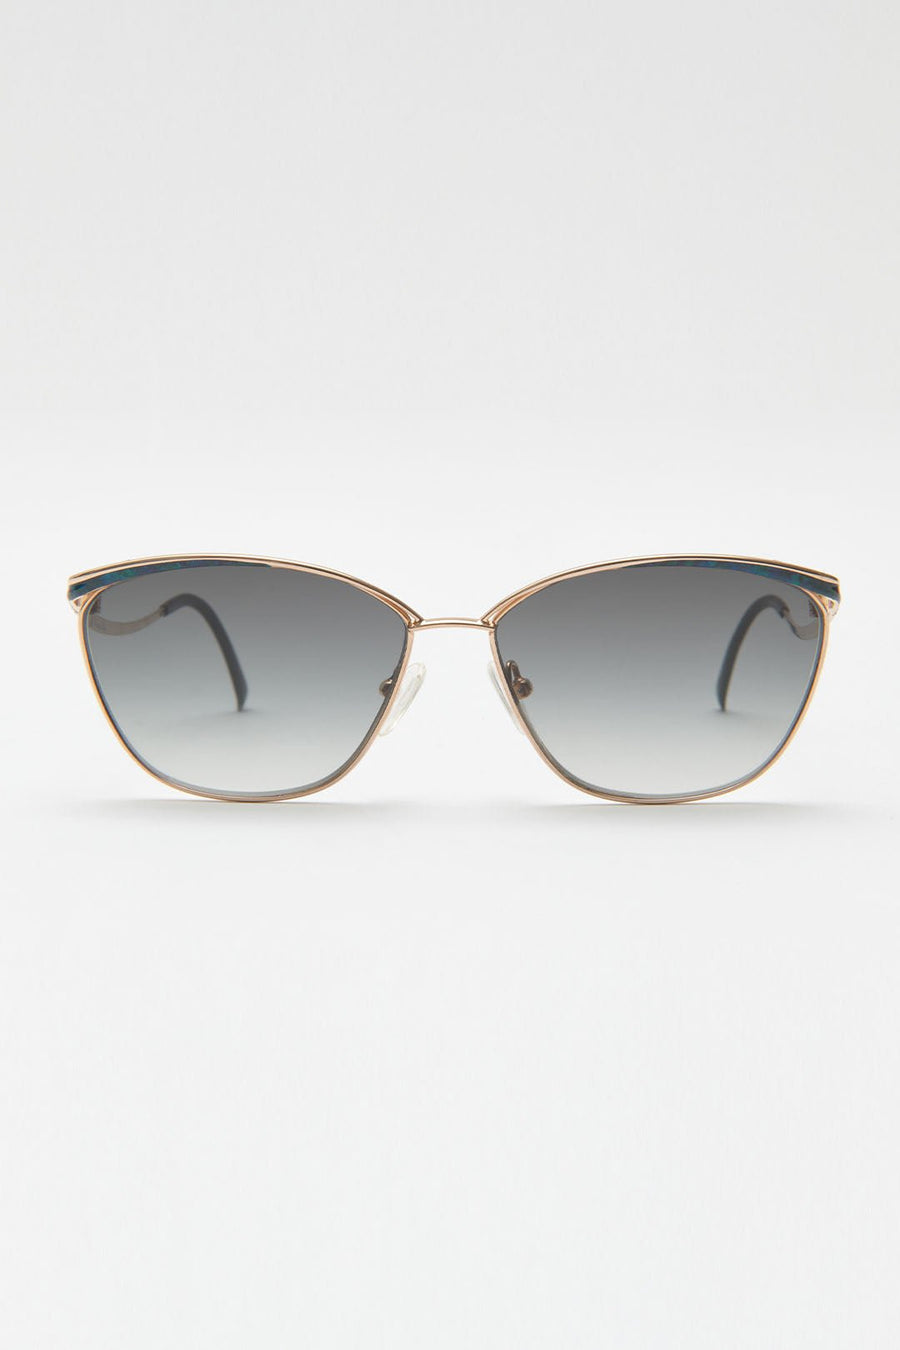 DIOR: Sunglasses woman - Blue | DIOR sunglasses DIORPACIFIC B2I online at  GIGLIO.COM